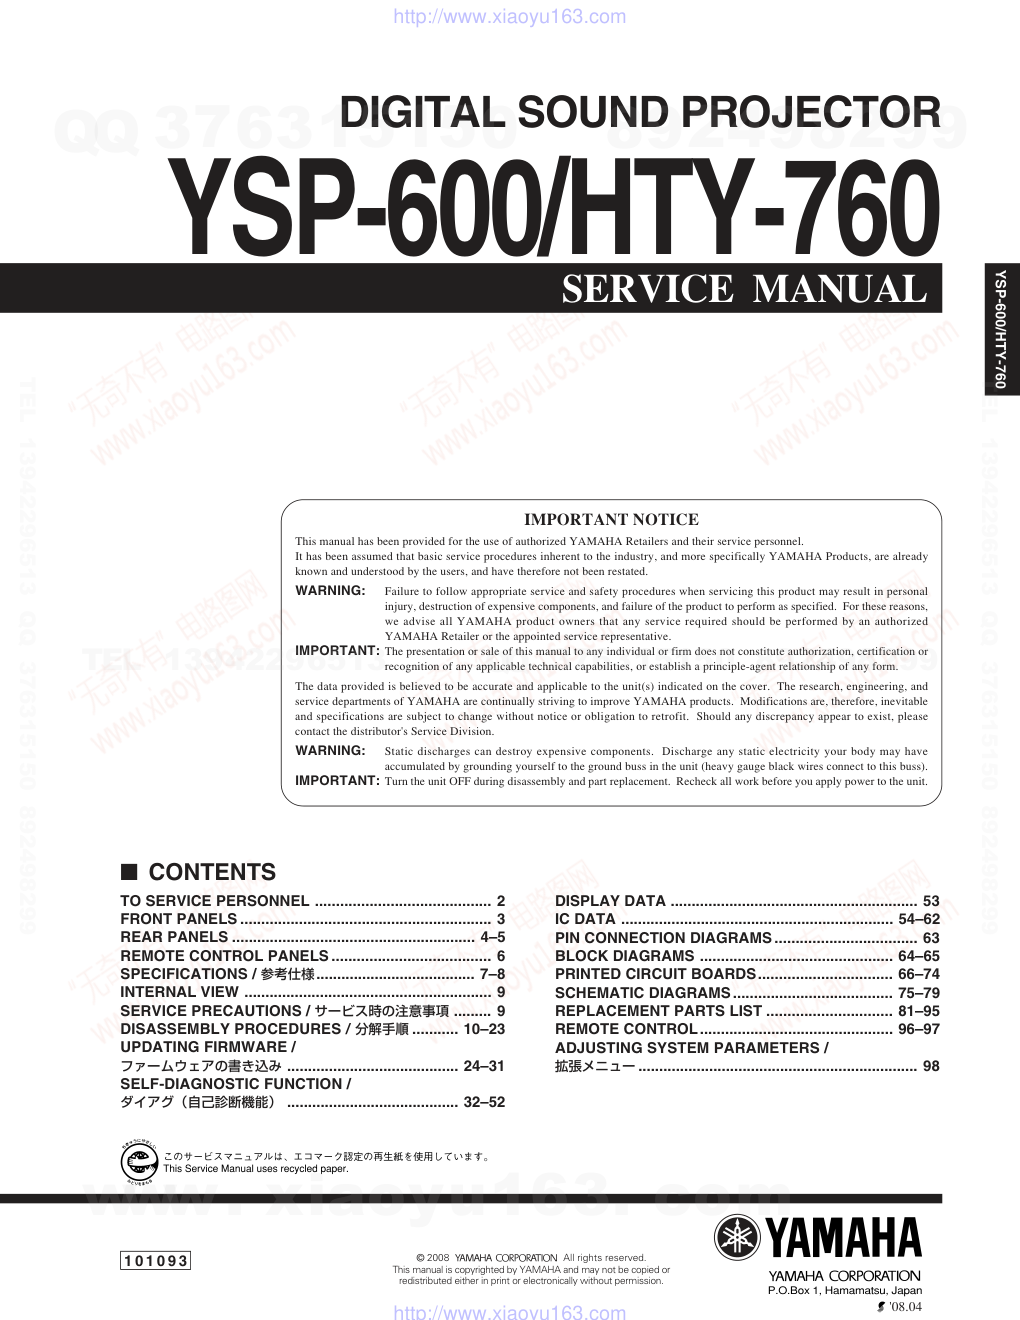 雅马哈YAMAHA YSP-600电路图-0